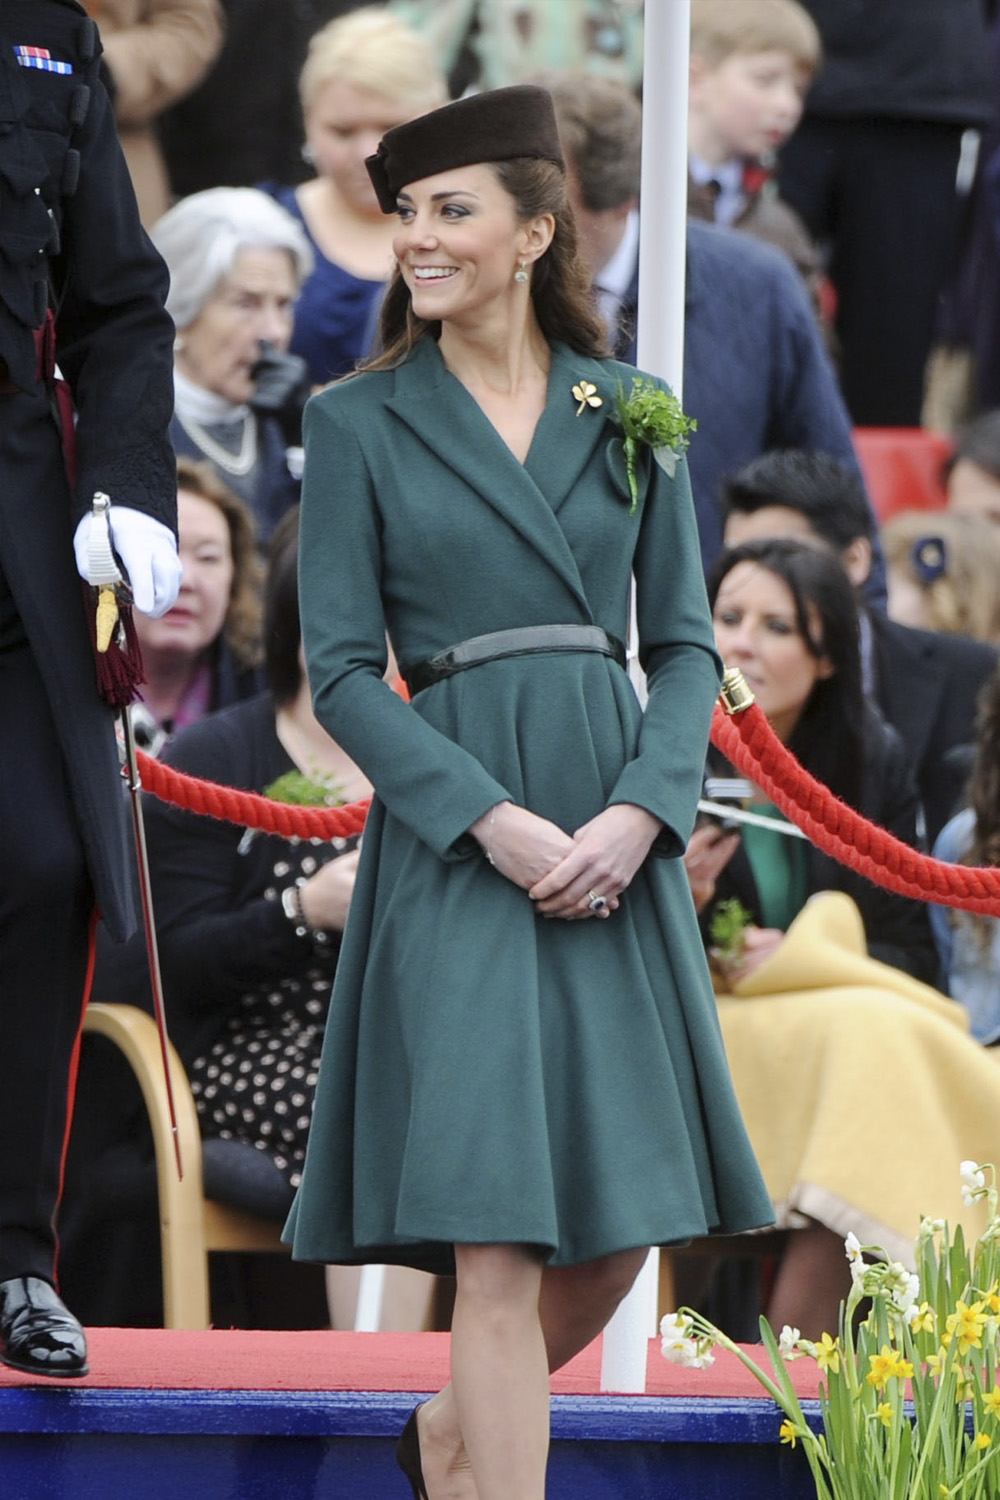 The Duchess of Cambridge in Emilia Wickstead.